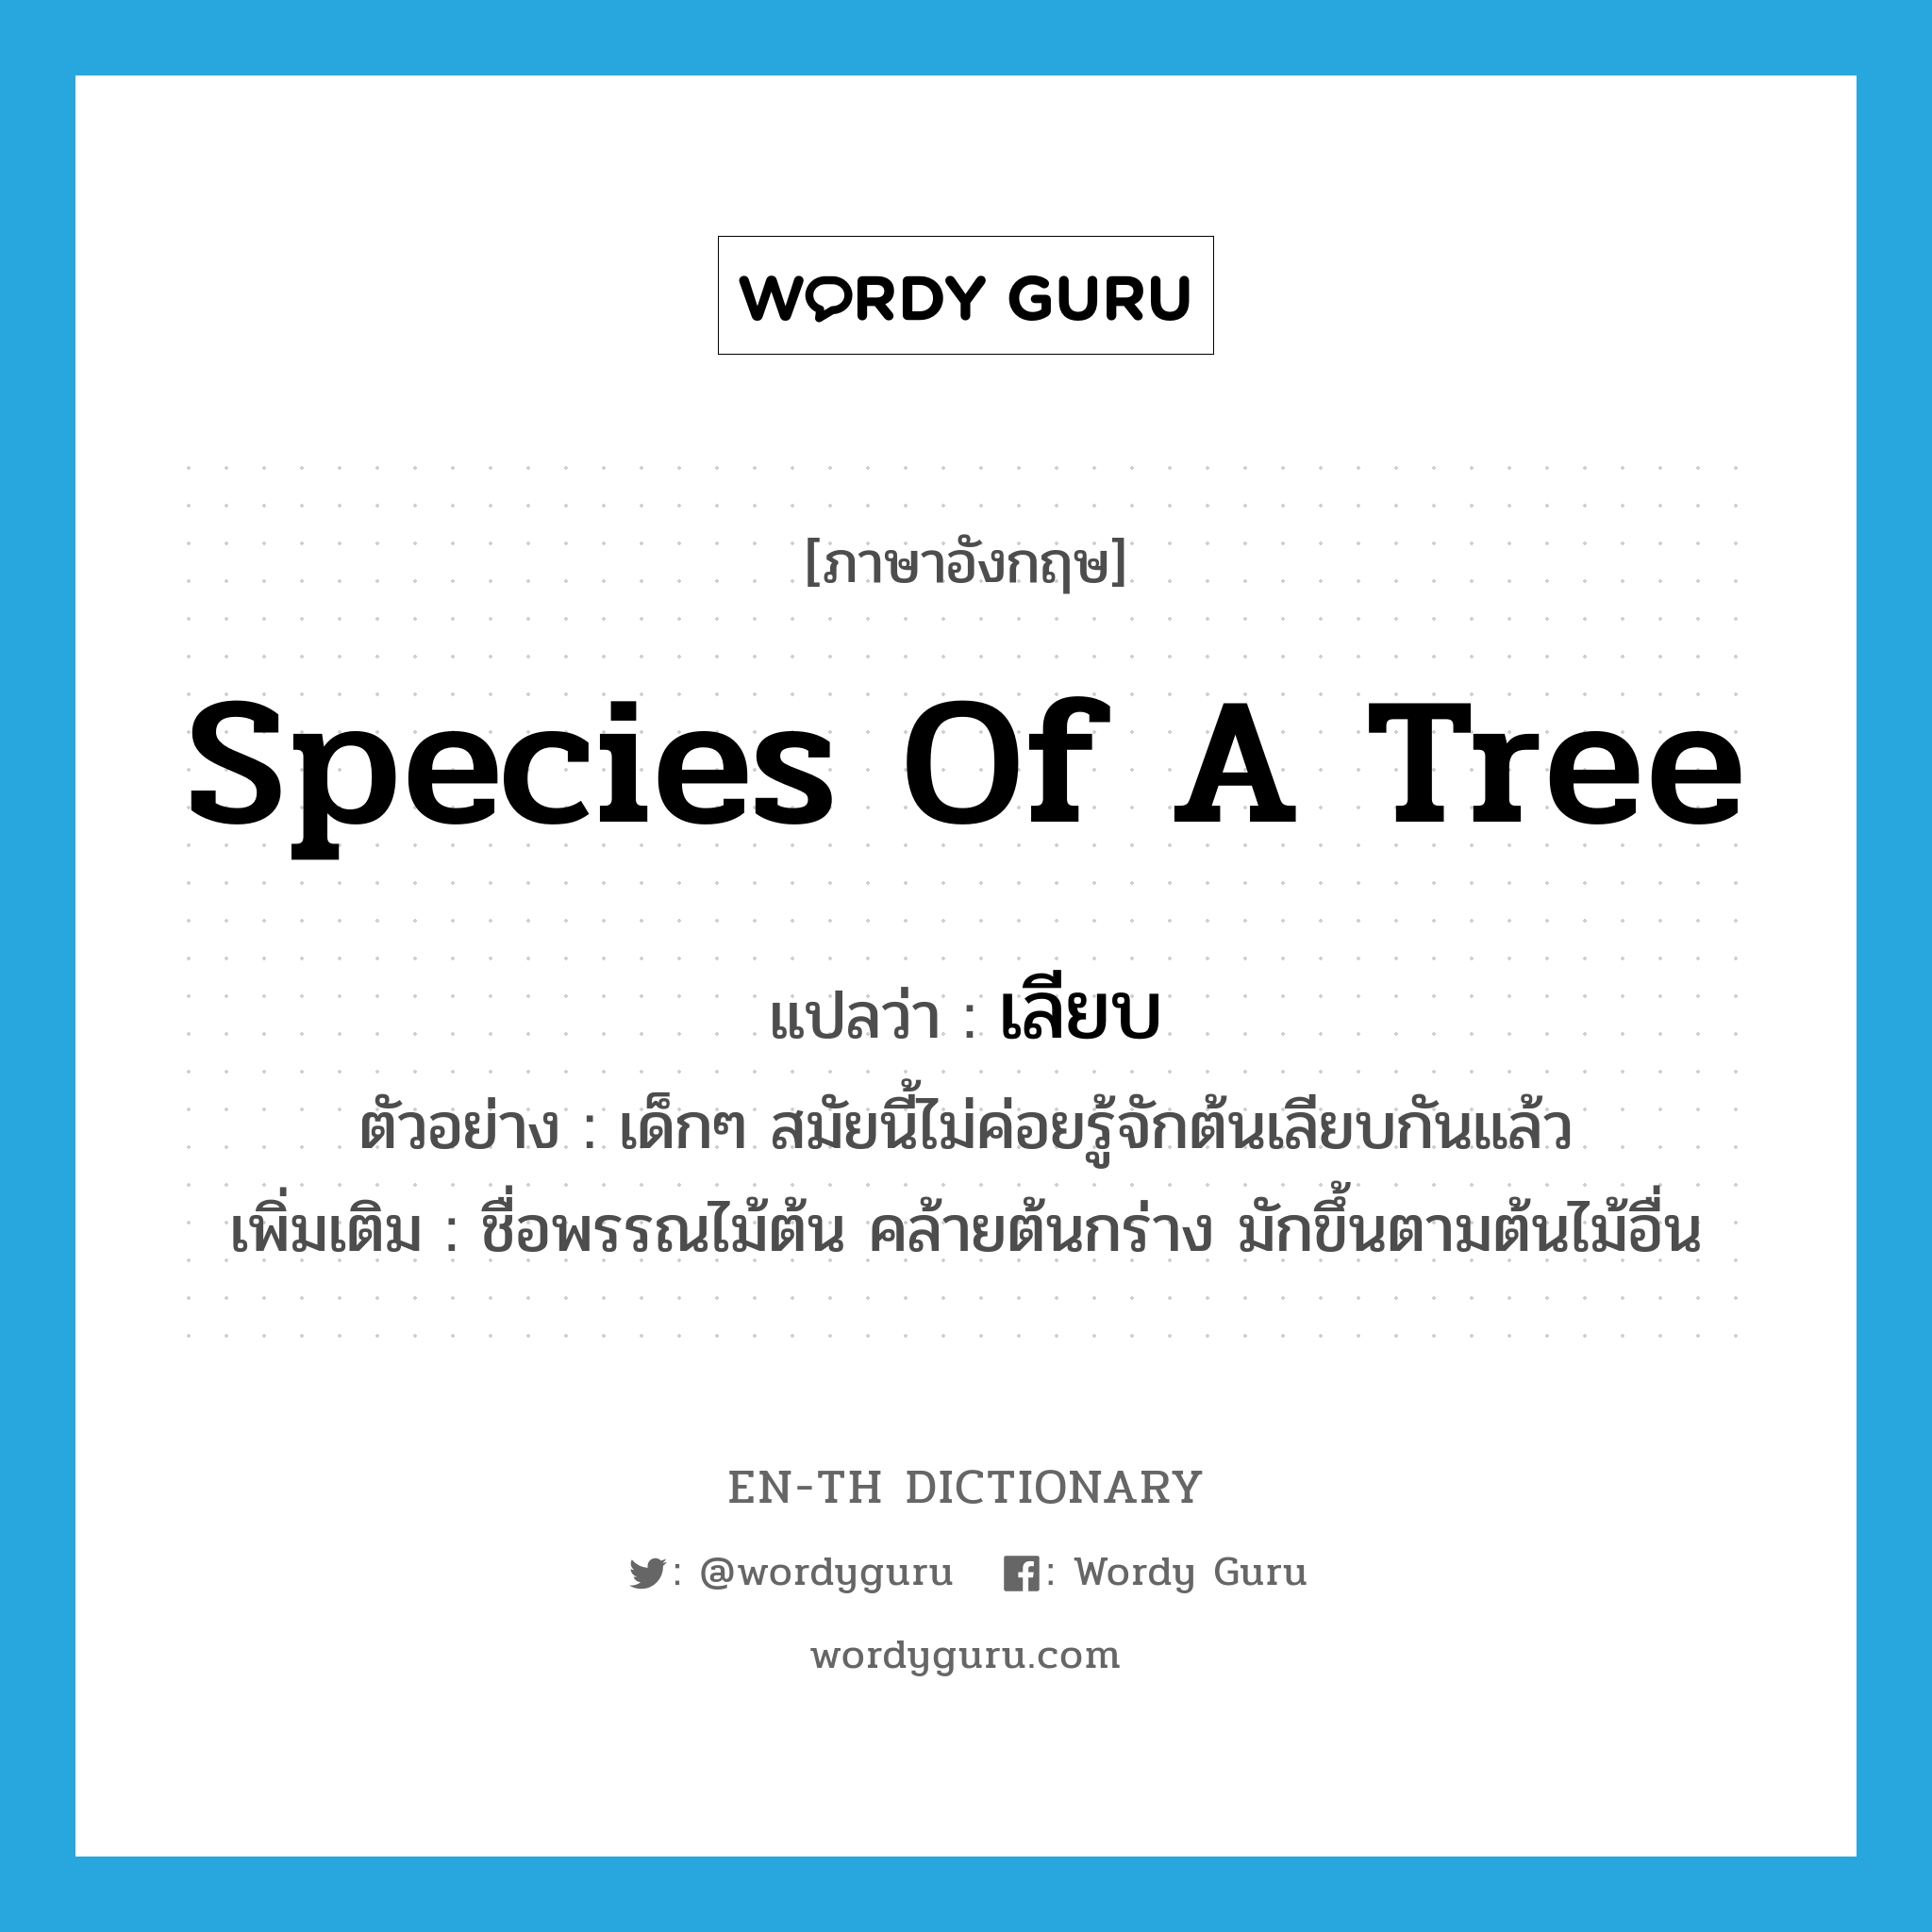 species of a tree แปลว่า?, คำศัพท์ภาษาอังกฤษ species of a tree แปลว่า เลียบ ประเภท N ตัวอย่าง เด็กๆ สมัยนี้ไม่ค่อยรู้จักต้นเลียบกันแล้ว เพิ่มเติม ชื่อพรรณไม้ต้น คล้ายต้นกร่าง มักขึ้นตามต้นไม้อื่น หมวด N